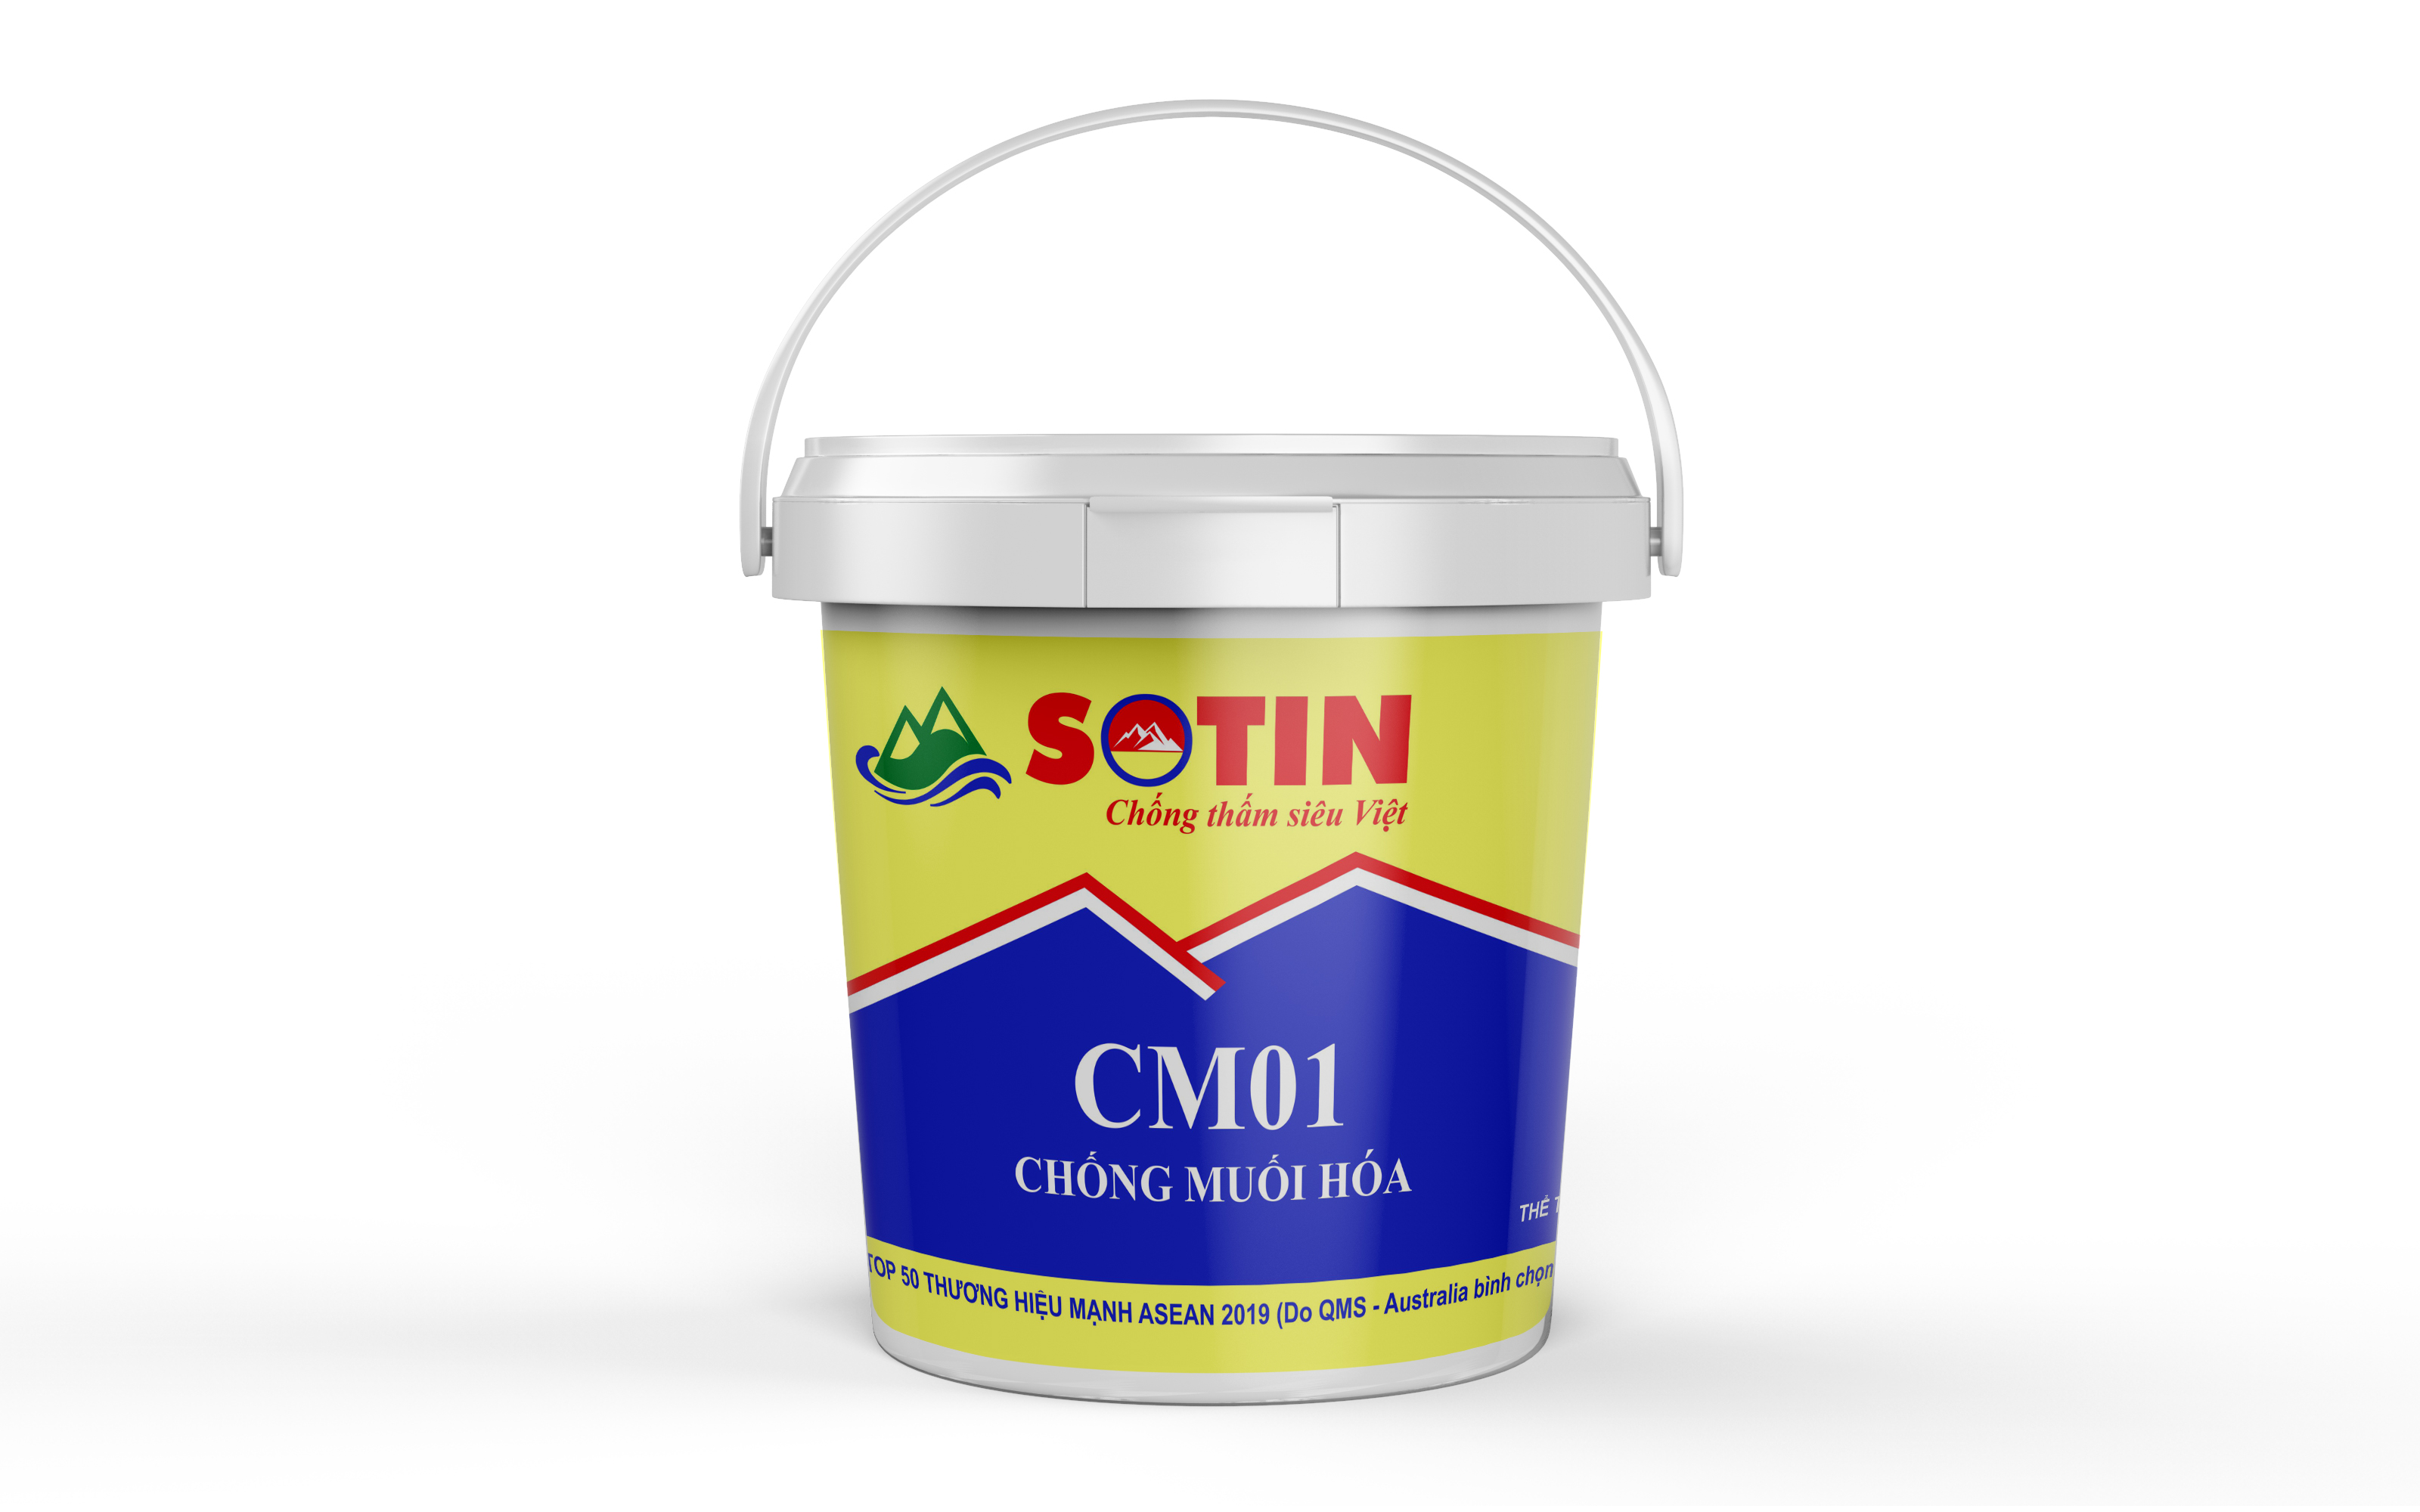 Chất chống muối hóa Cm01